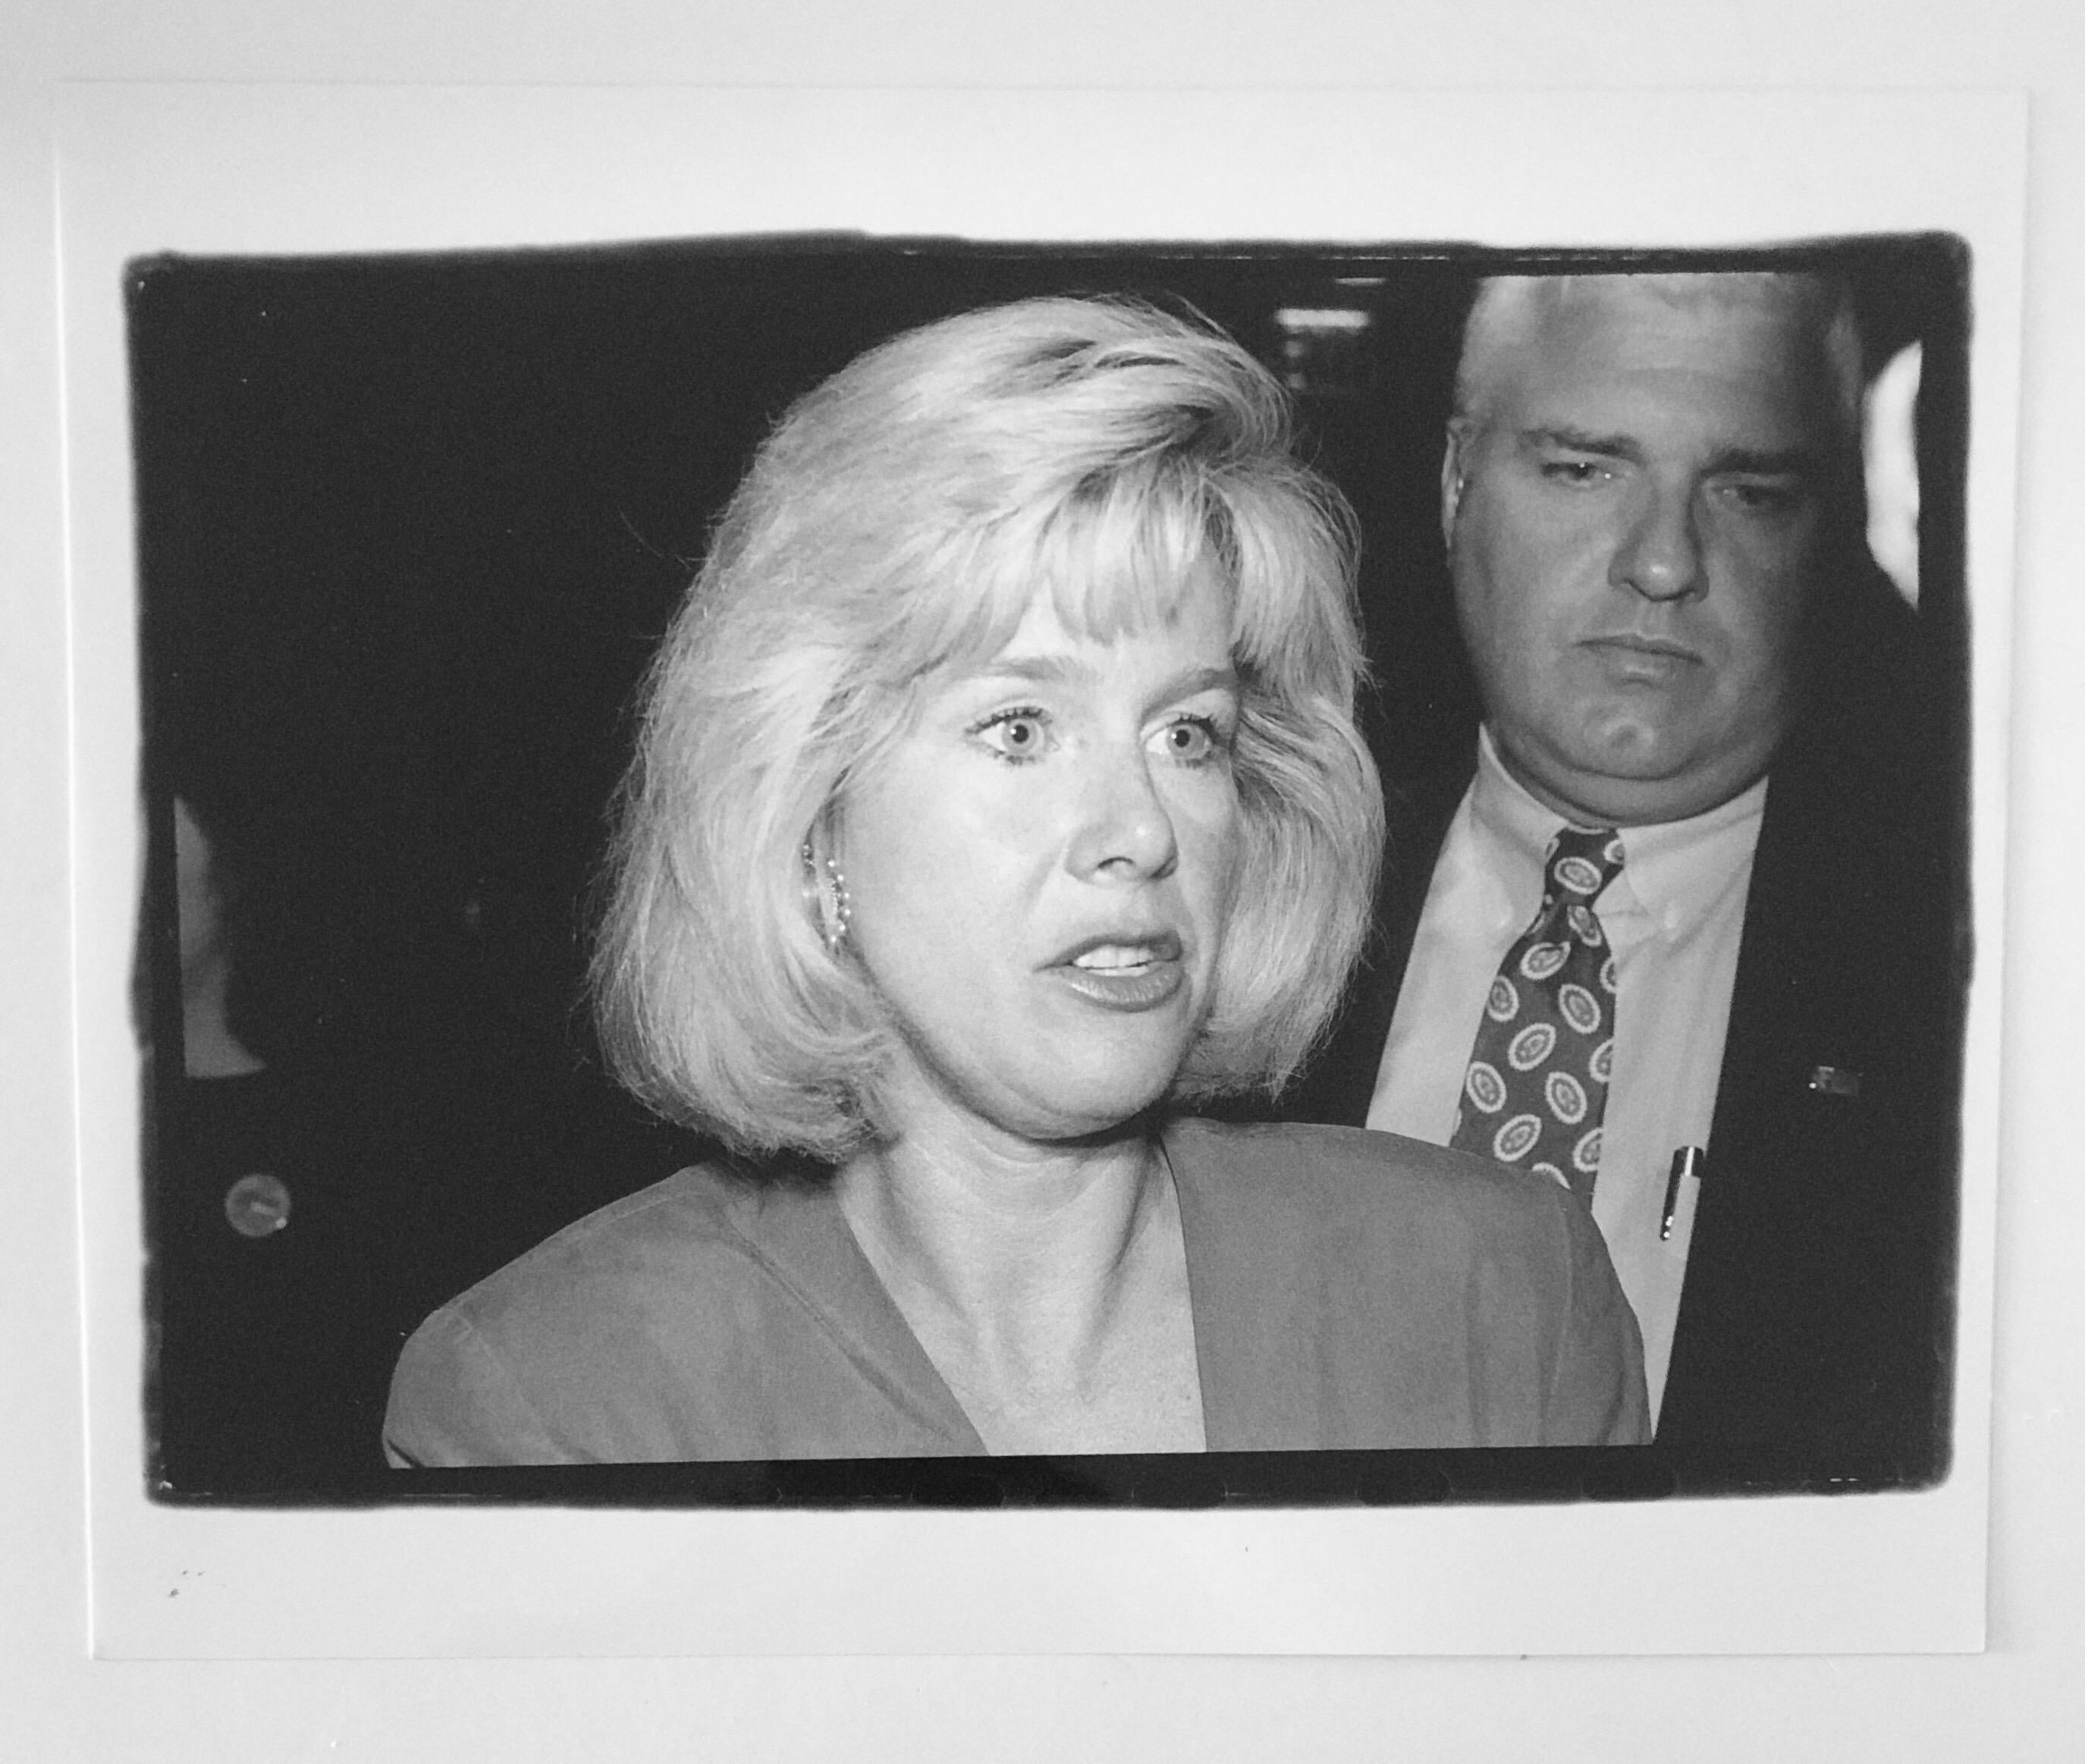 Tipper Gore bei der Spendenaktion der Demokraten 10/1/1992
Fotograf ist Fred McDarrah
Über einen Zeitraum von 50 Jahren dokumentierte McDarrah den Aufstieg der Beat-Generation, die postmoderne Kunstbewegung der Stadt, ihre